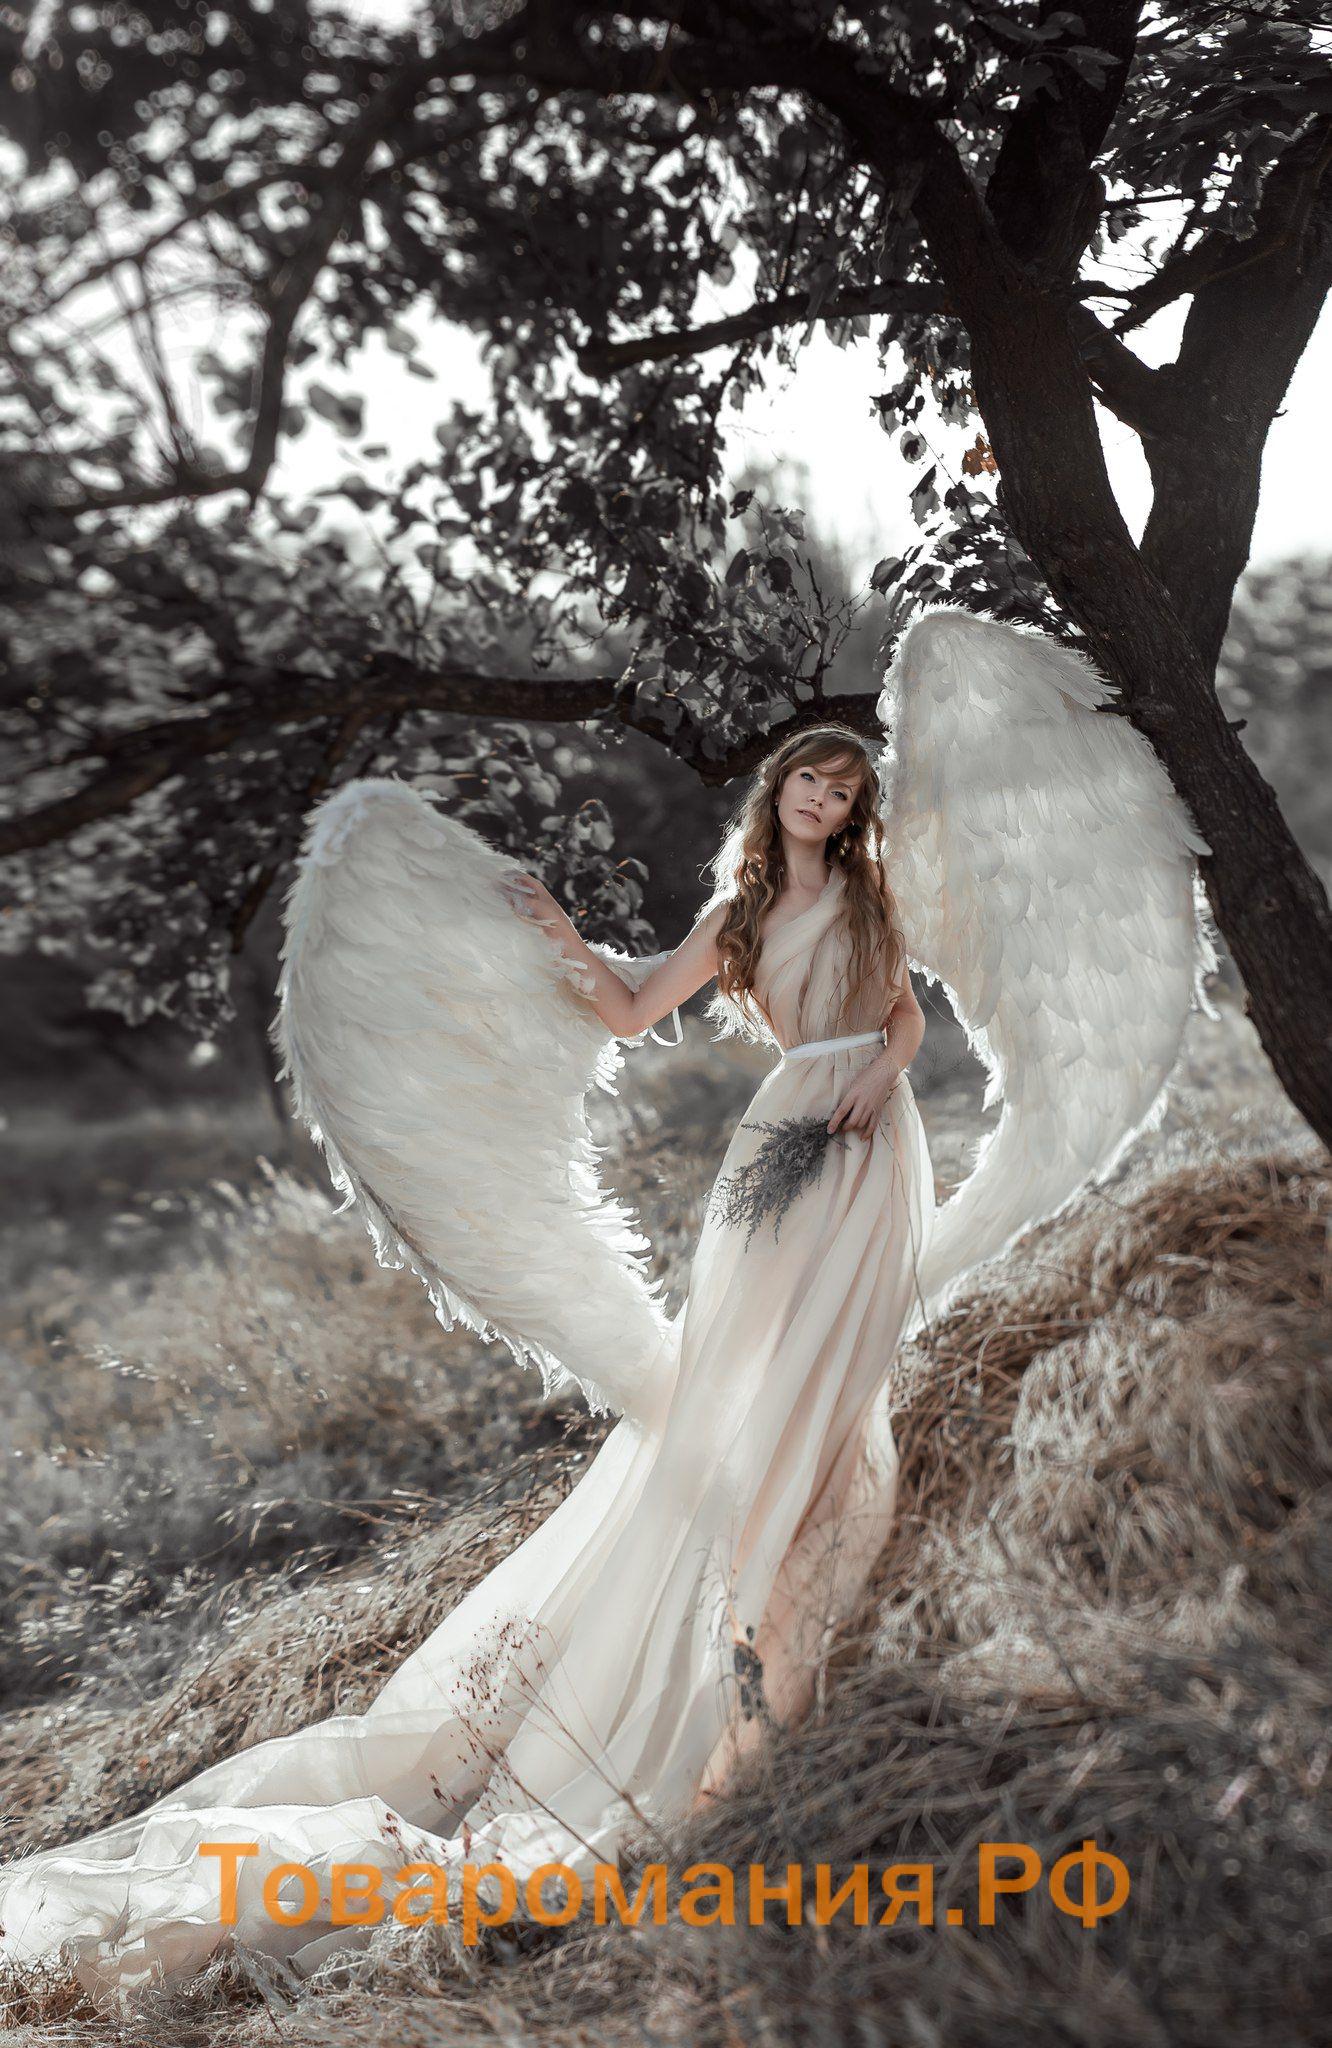 Красивые фото ангелов (60 фото) - Товаромания.РФ